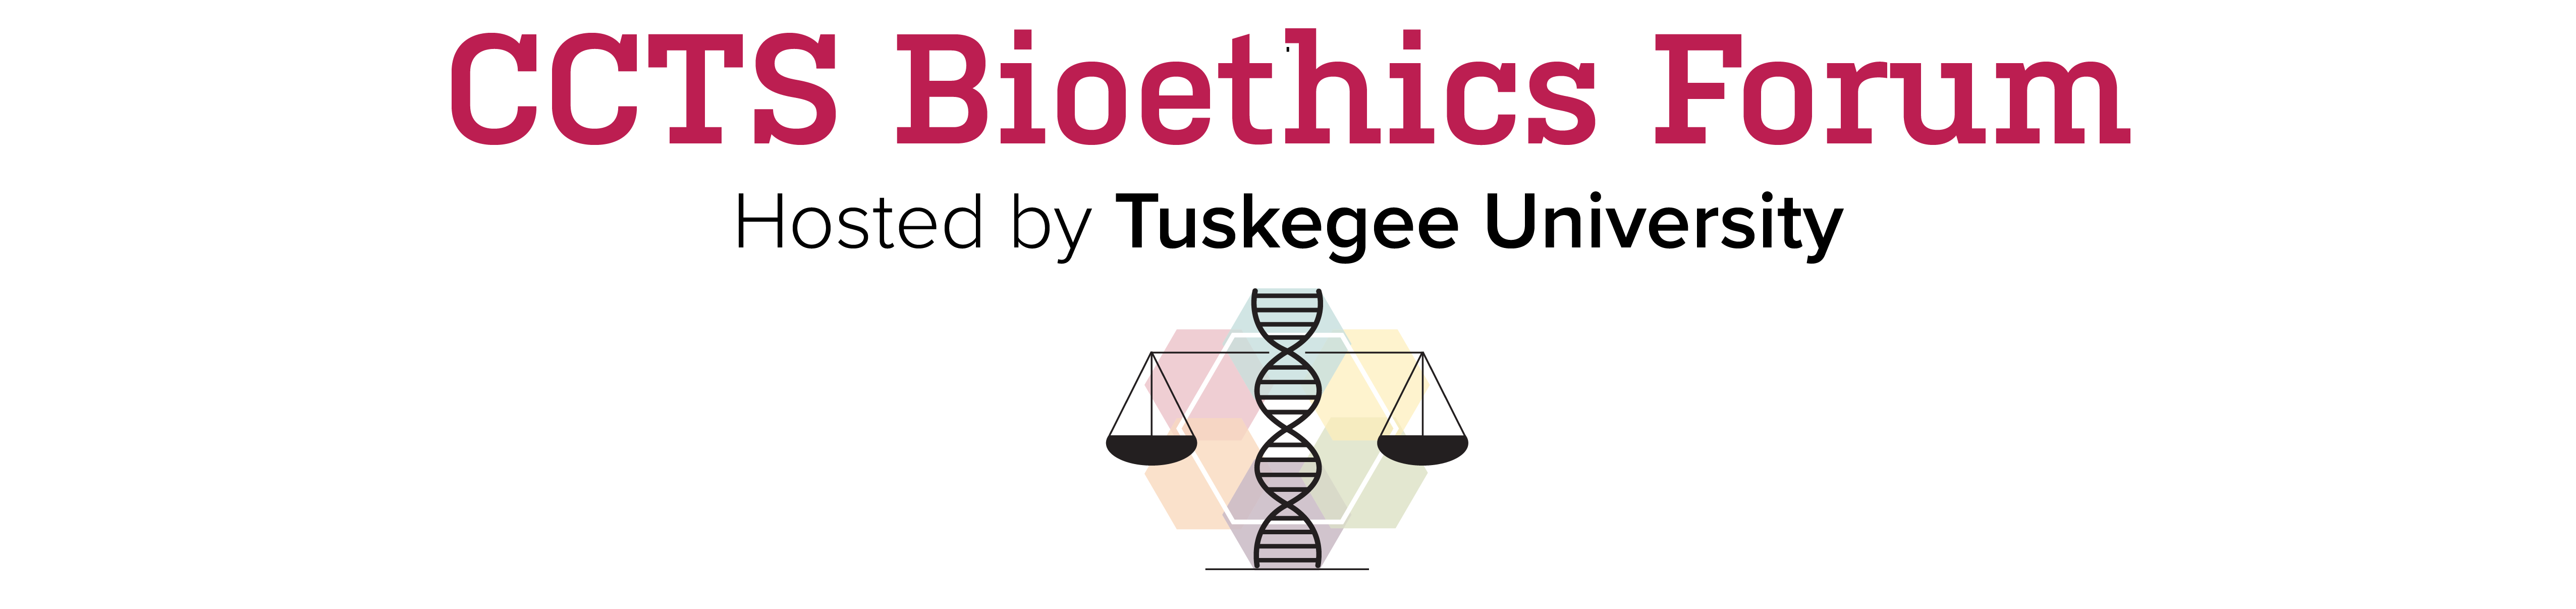 CCTS Bioethics Forum